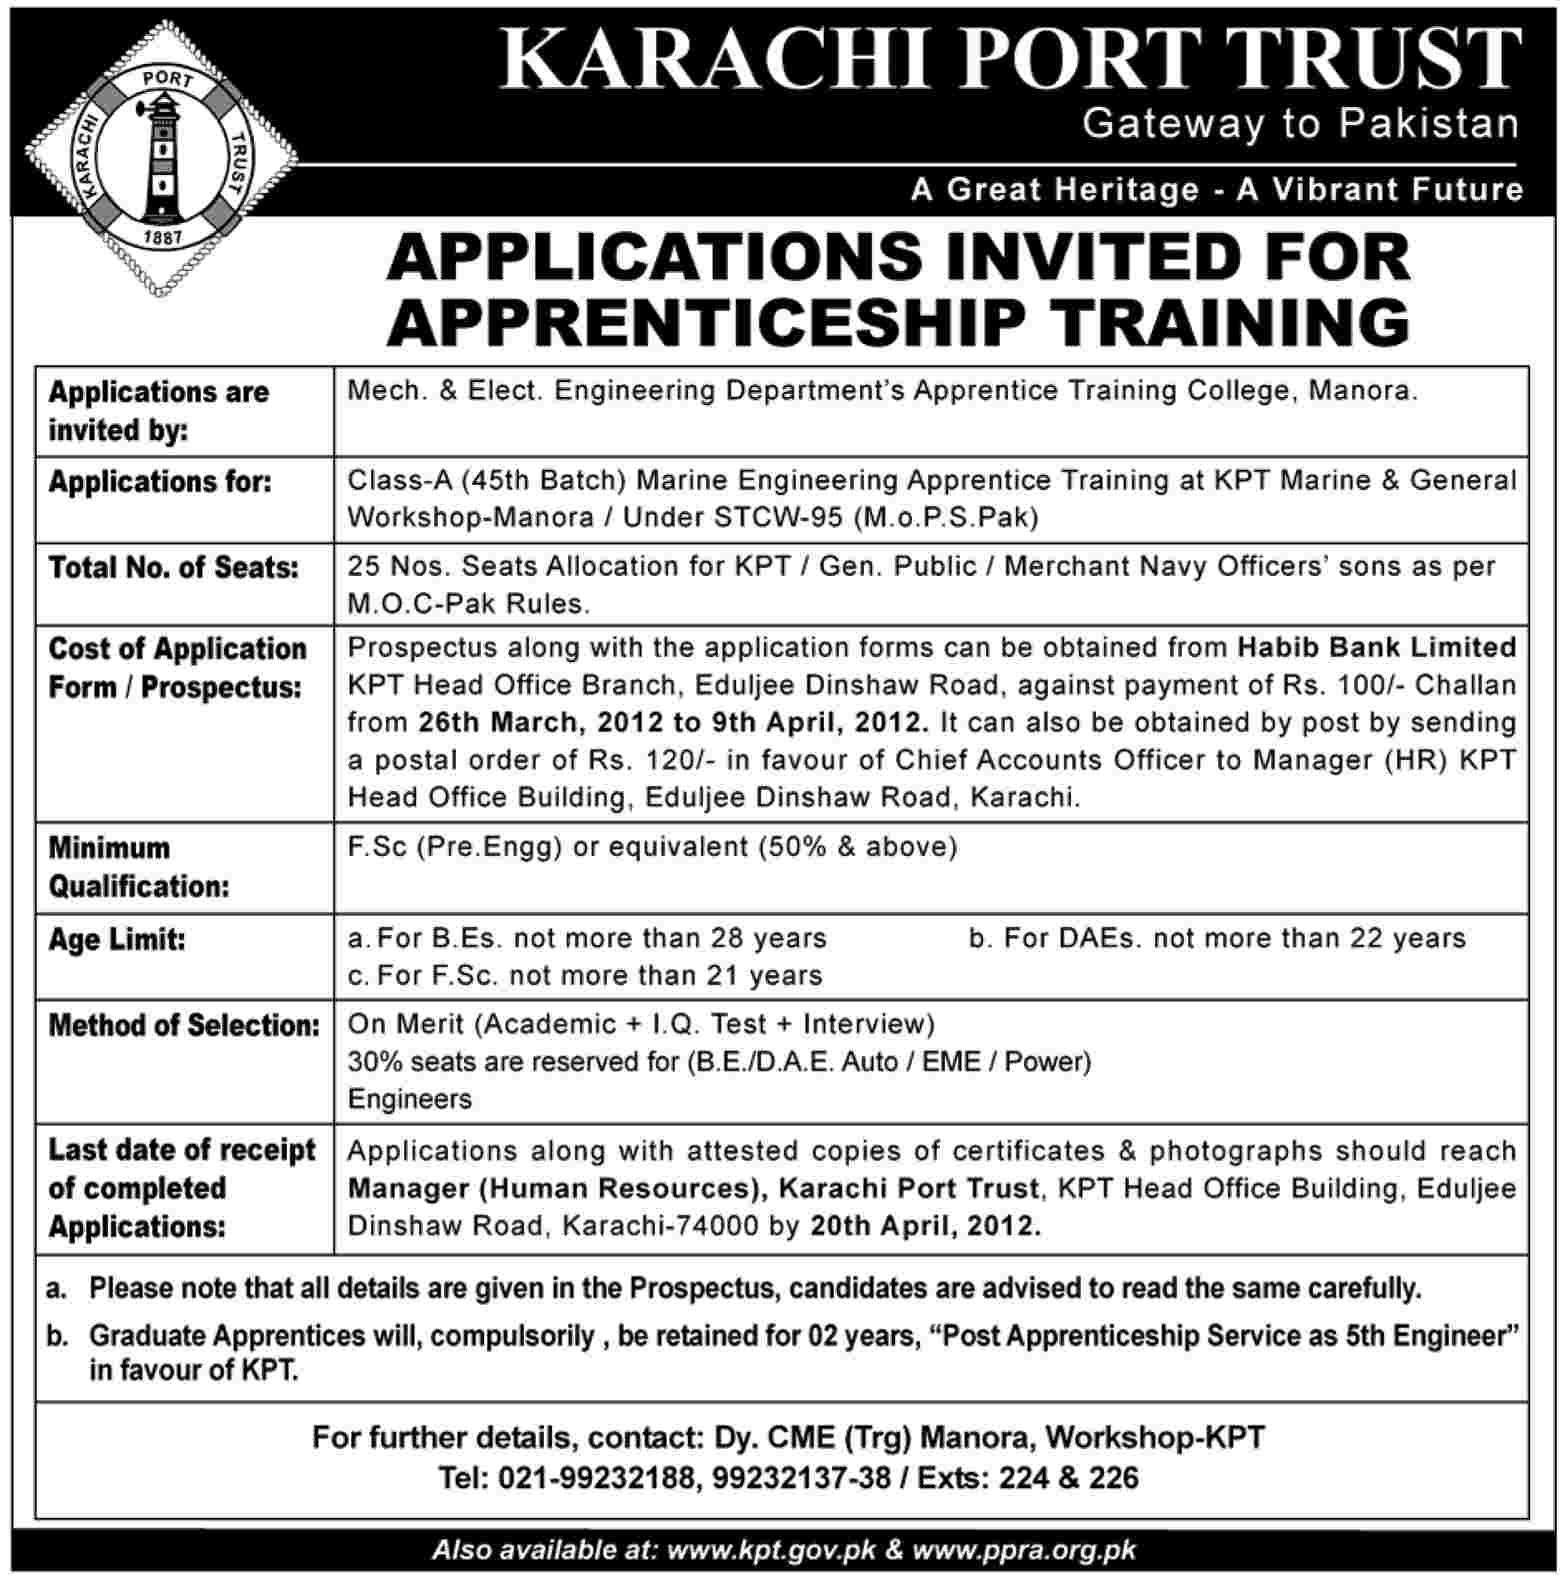 Karachi Port Trust Apprenticeship Training